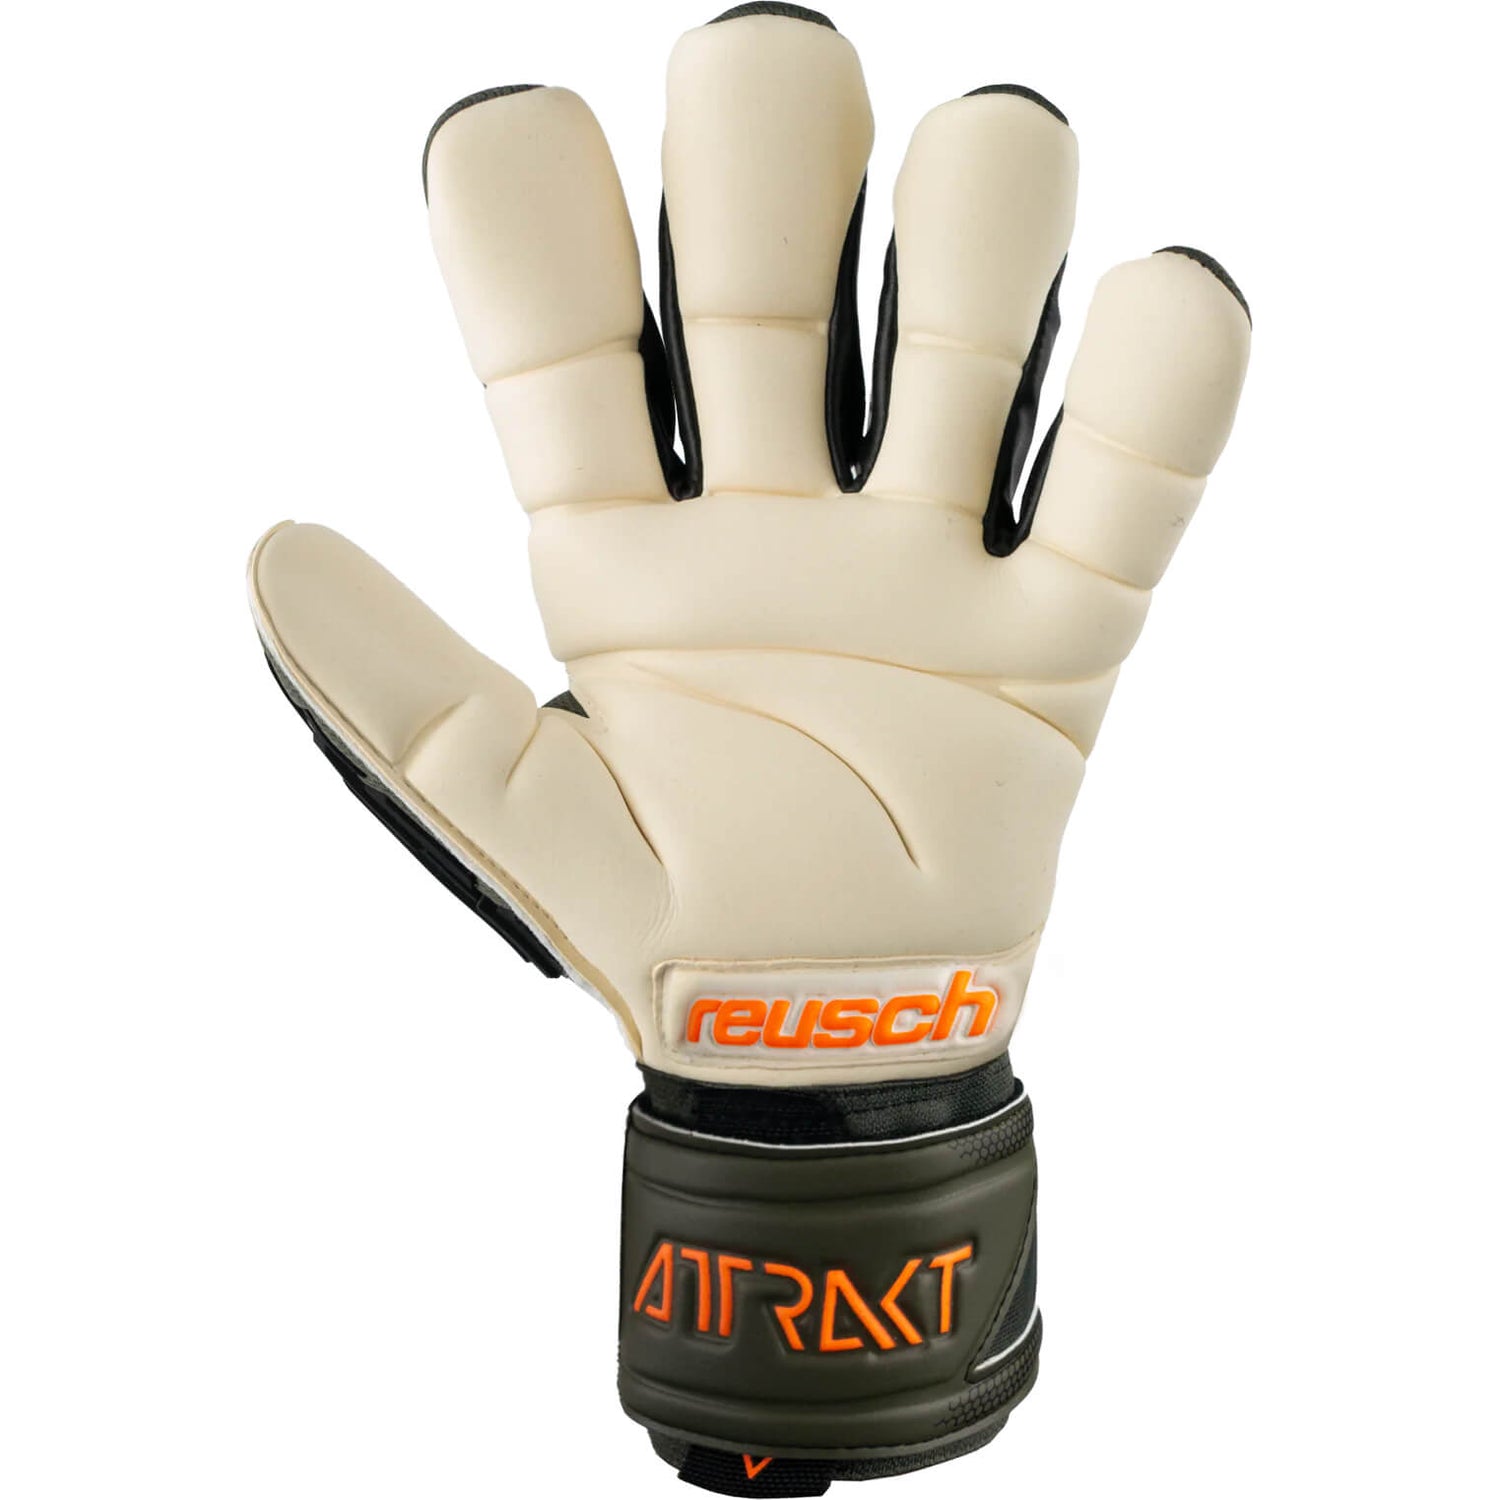 Reusch Attrakt Freegel Gold X Finger Support Goalkeeper Gloves (Single - Inner)